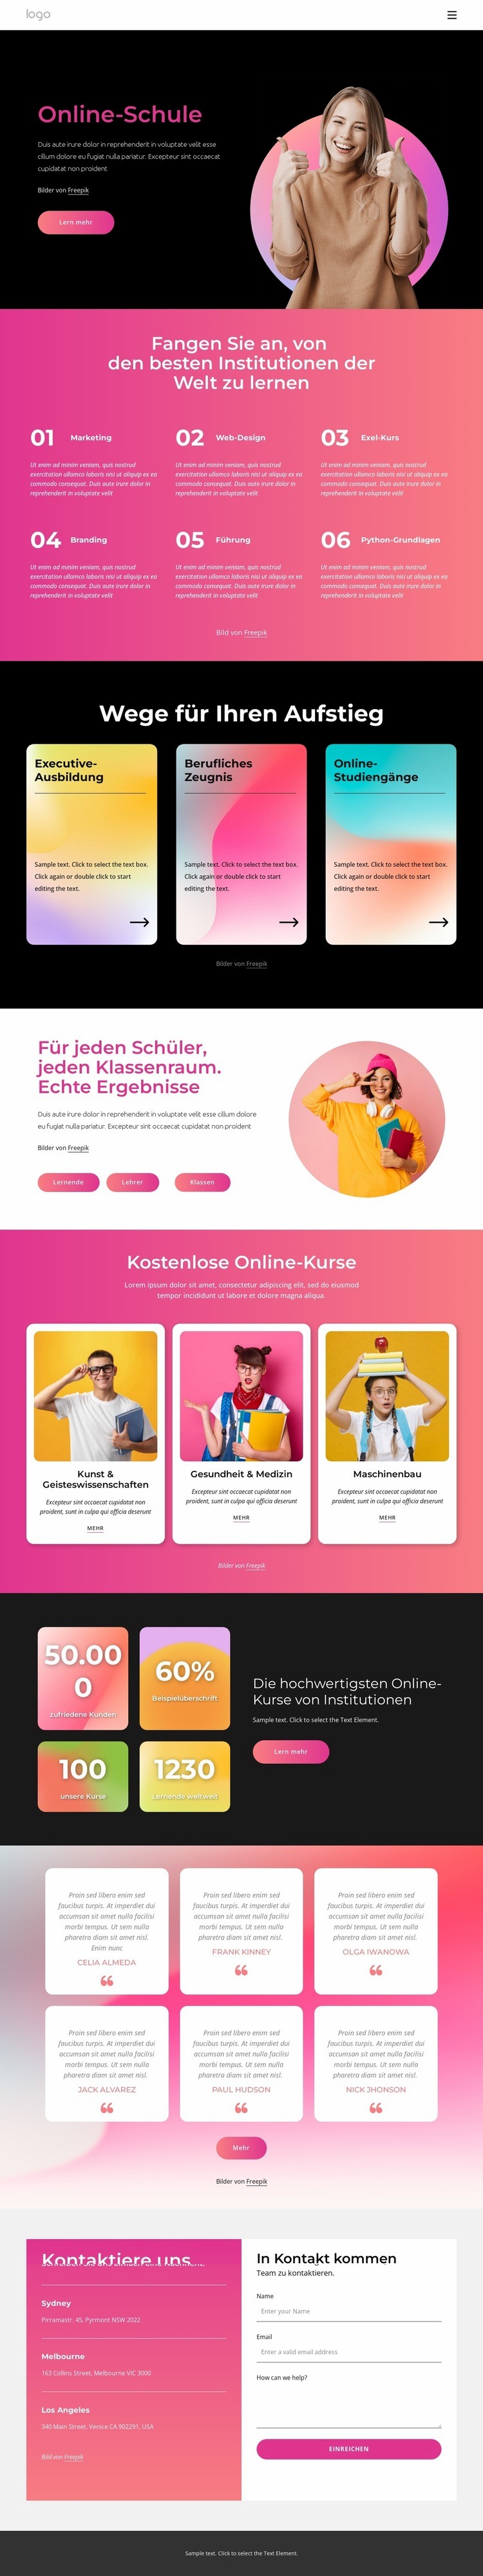 Online-Schule Website-Modell